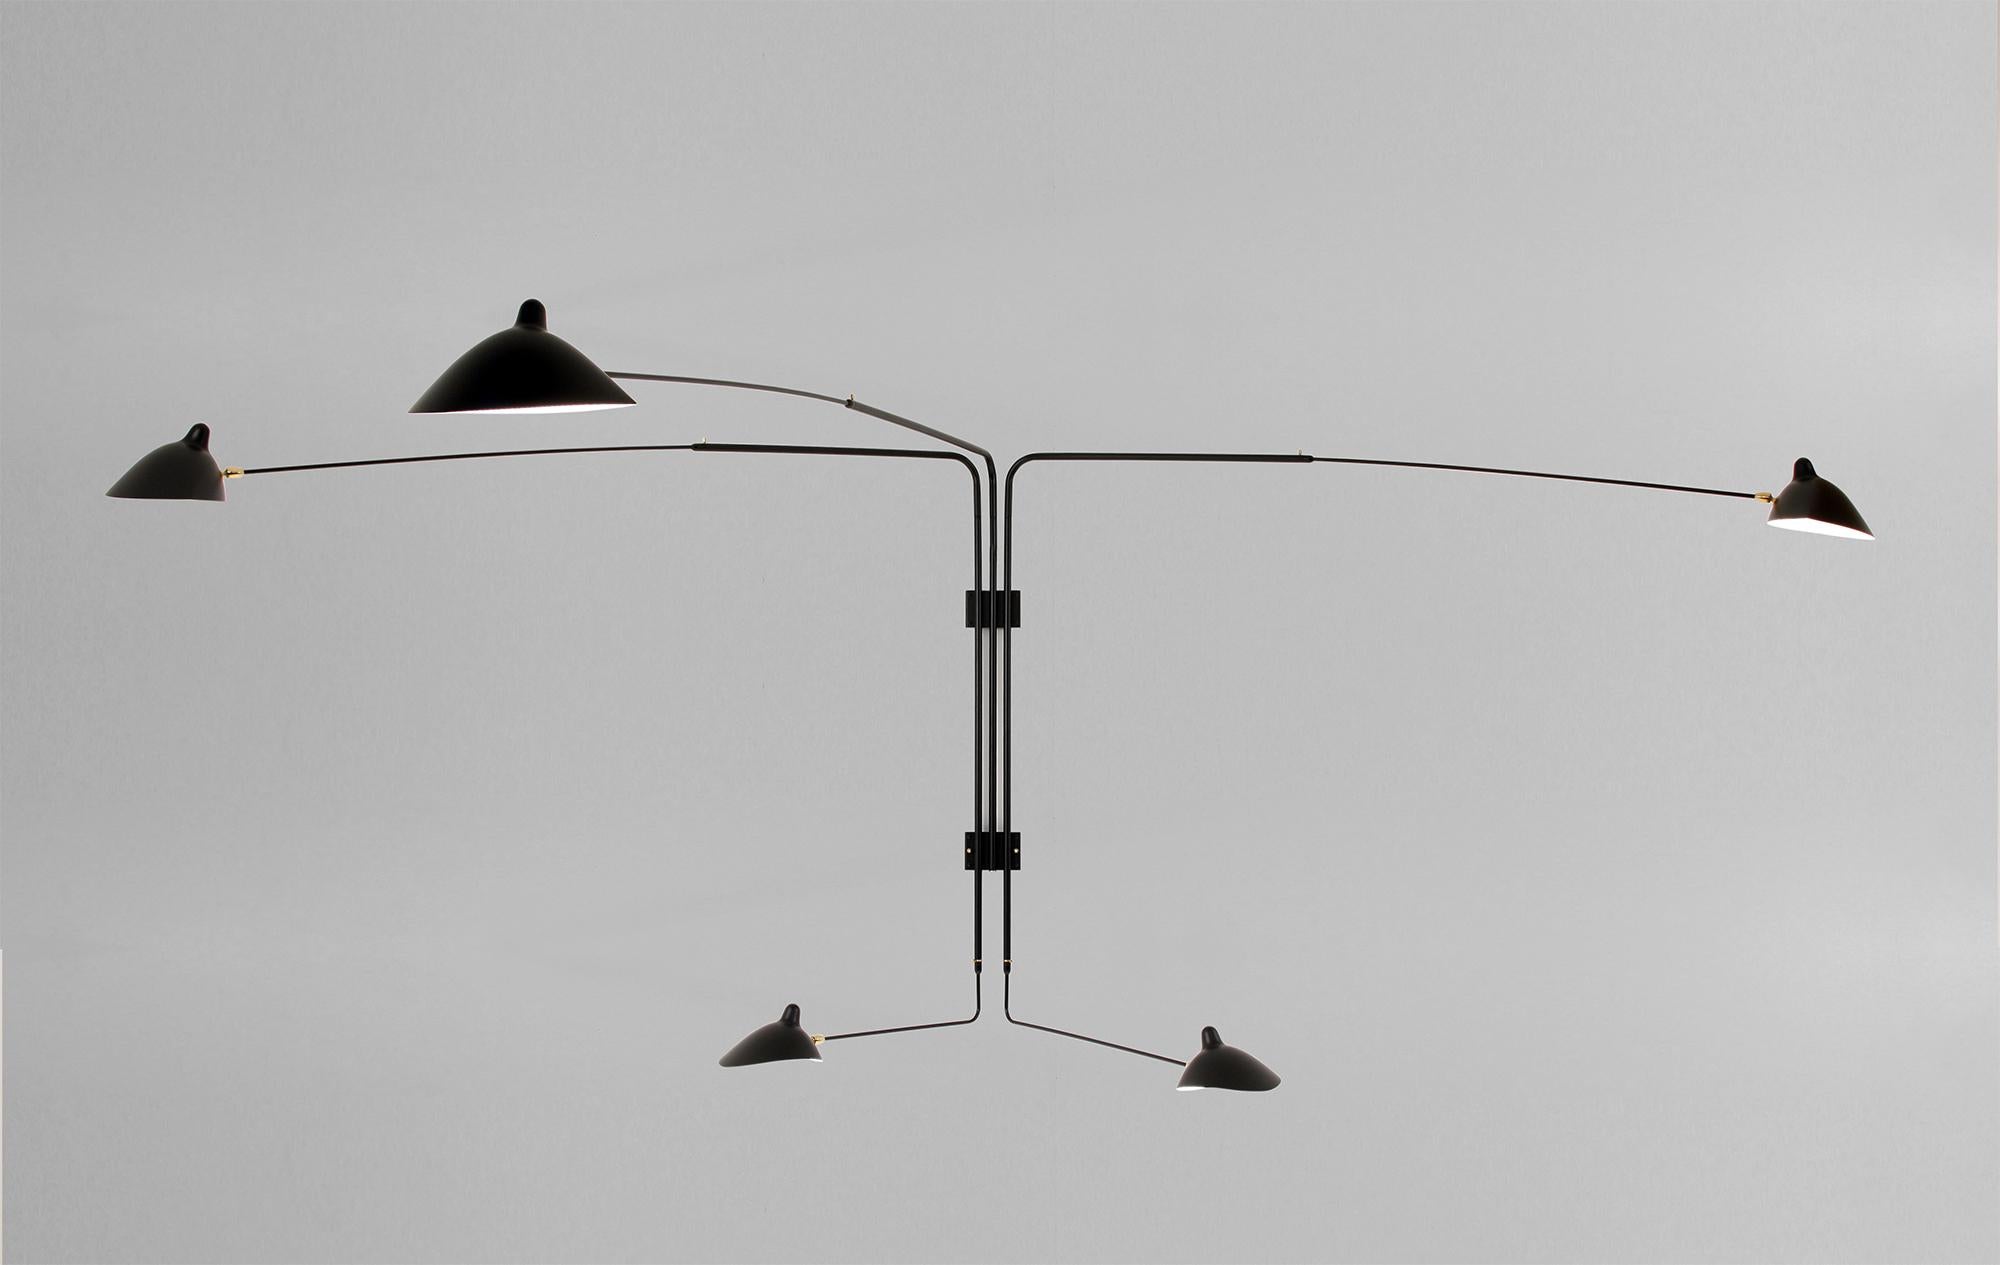 Lampada da parete modello 'Four Rotating Straight Arms Wall Lamp' disegnata da Serge Mouille nel 1954.

Prodotto da Editions Serge Mouille in Francia. La produzione di lampade, applique e piantane è realizzata con tecniche artigianali e con gli